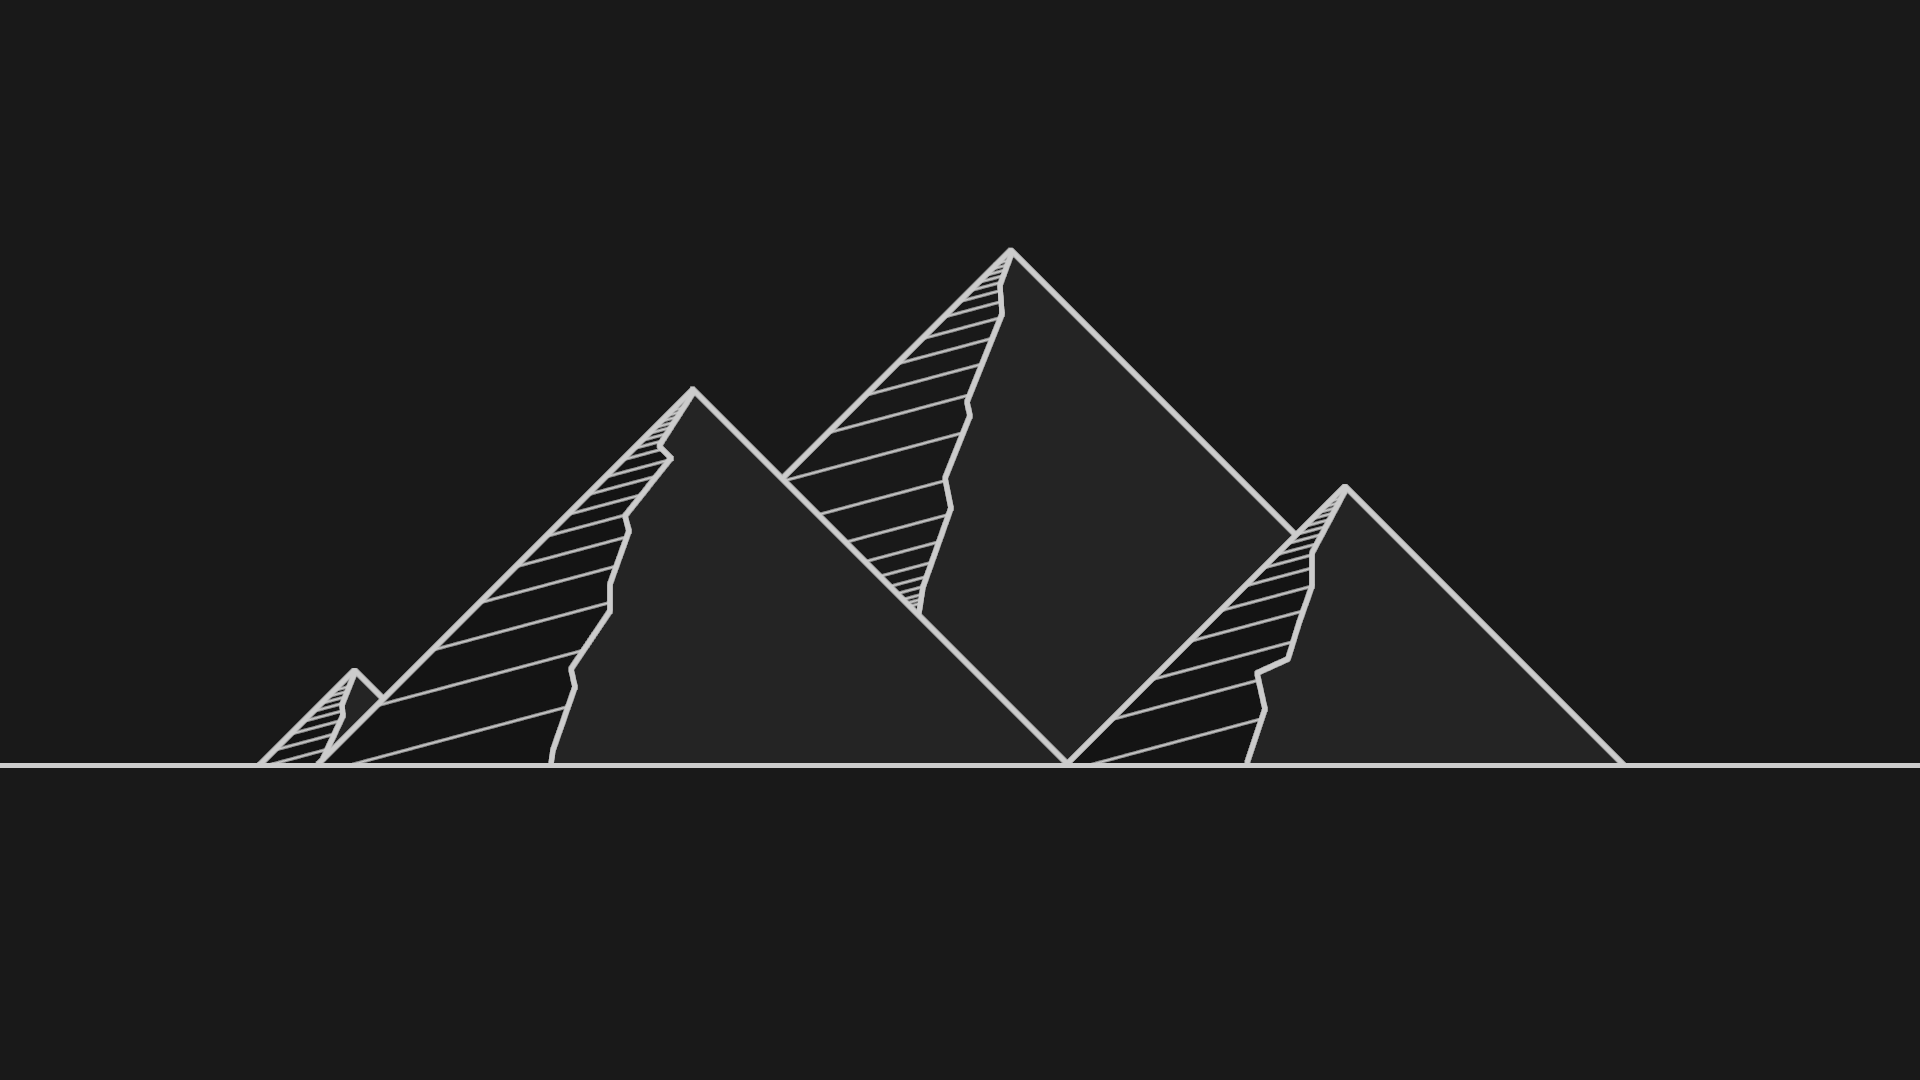 General 1920x1080 dark minimalism pyramid